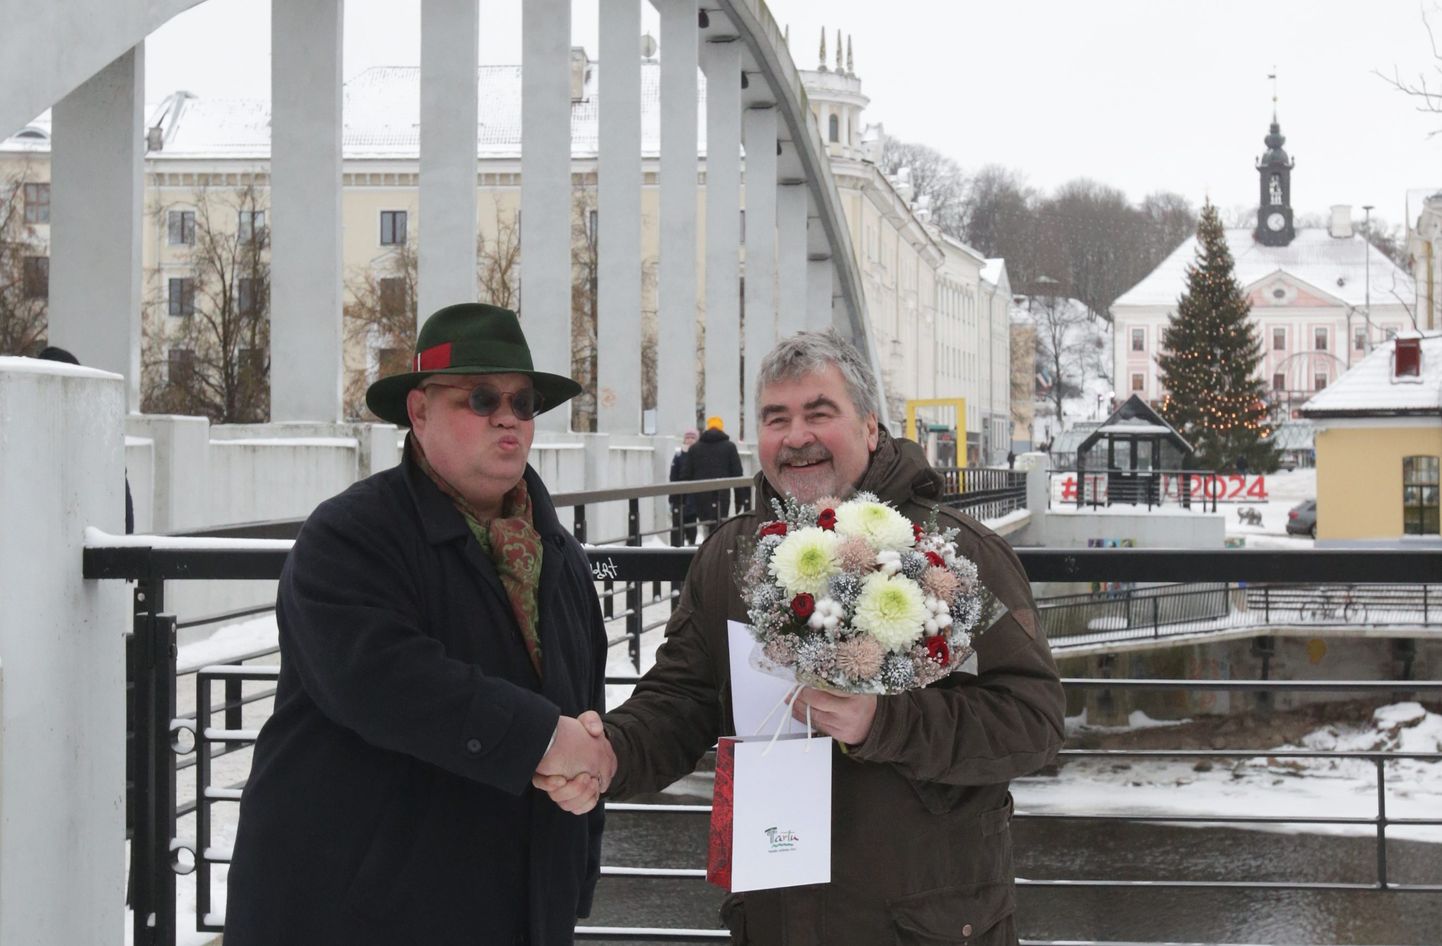 Tänavu kannab linnakirjaniku tiitlit Mart Kivastik (paremal), keda õnnitles jaanuaris auhinna saamisel ka mullune linnakirjanik Paavo Matsin.